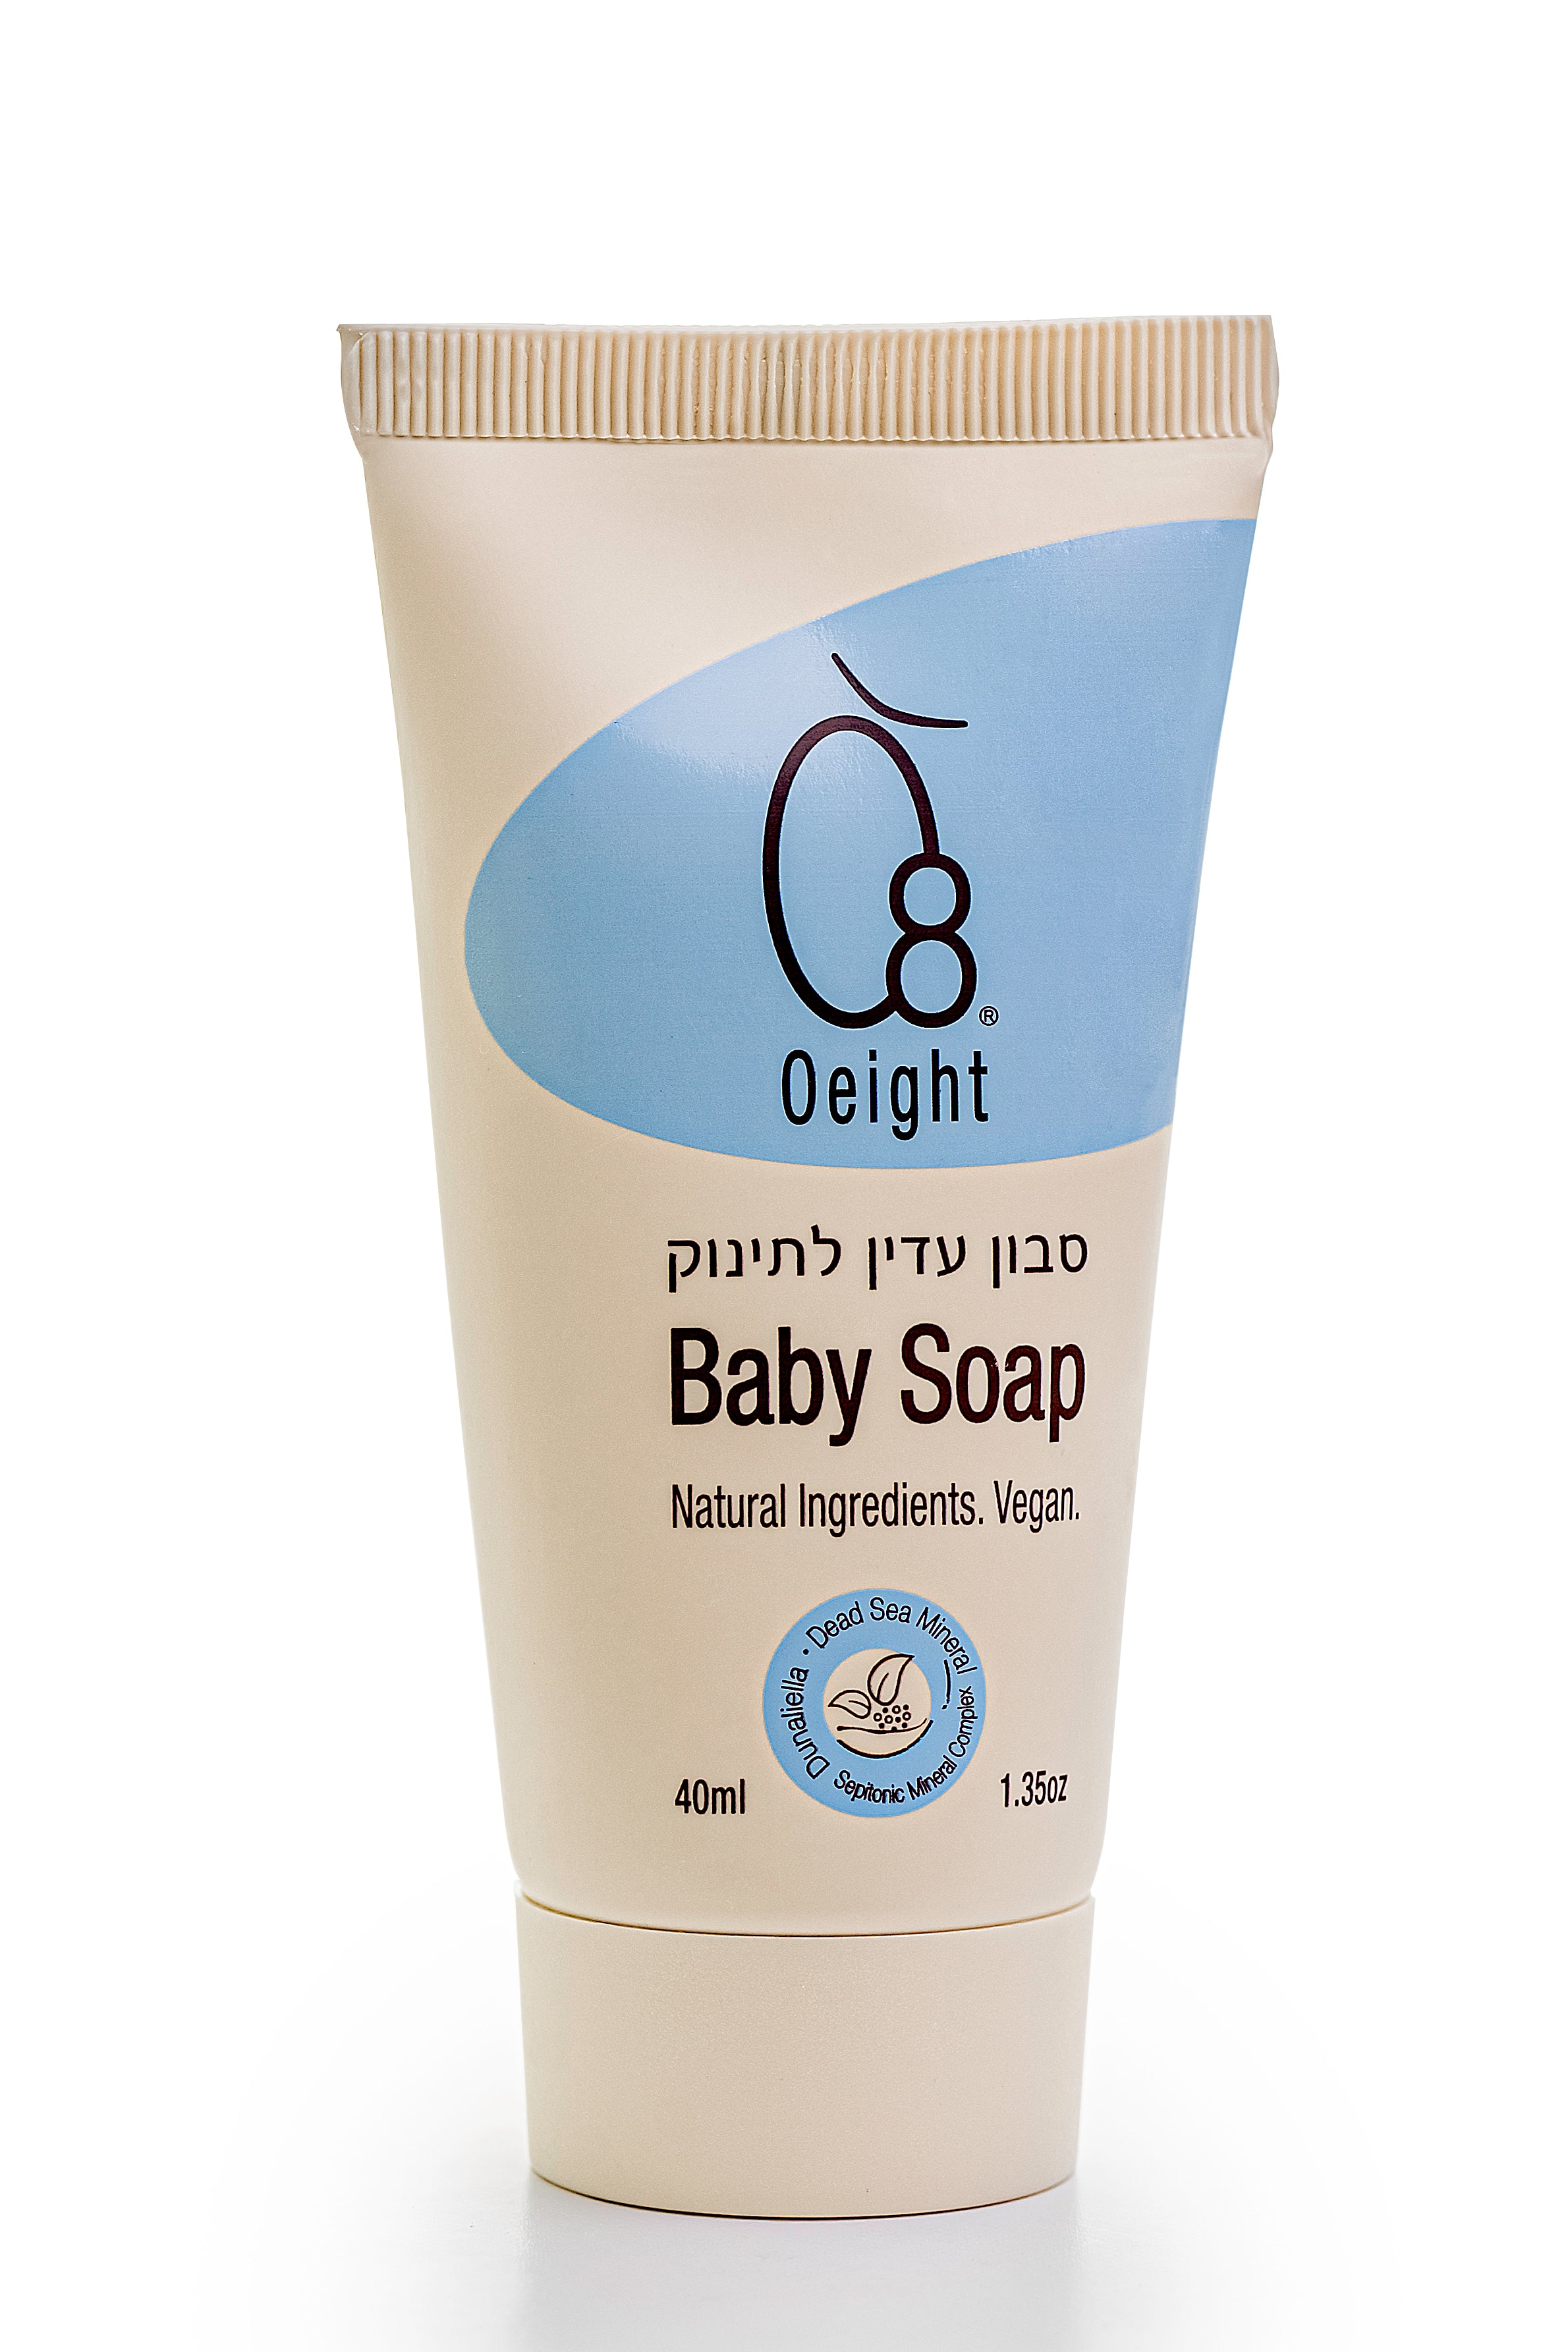 סבון עדין טבעי לתינוק 